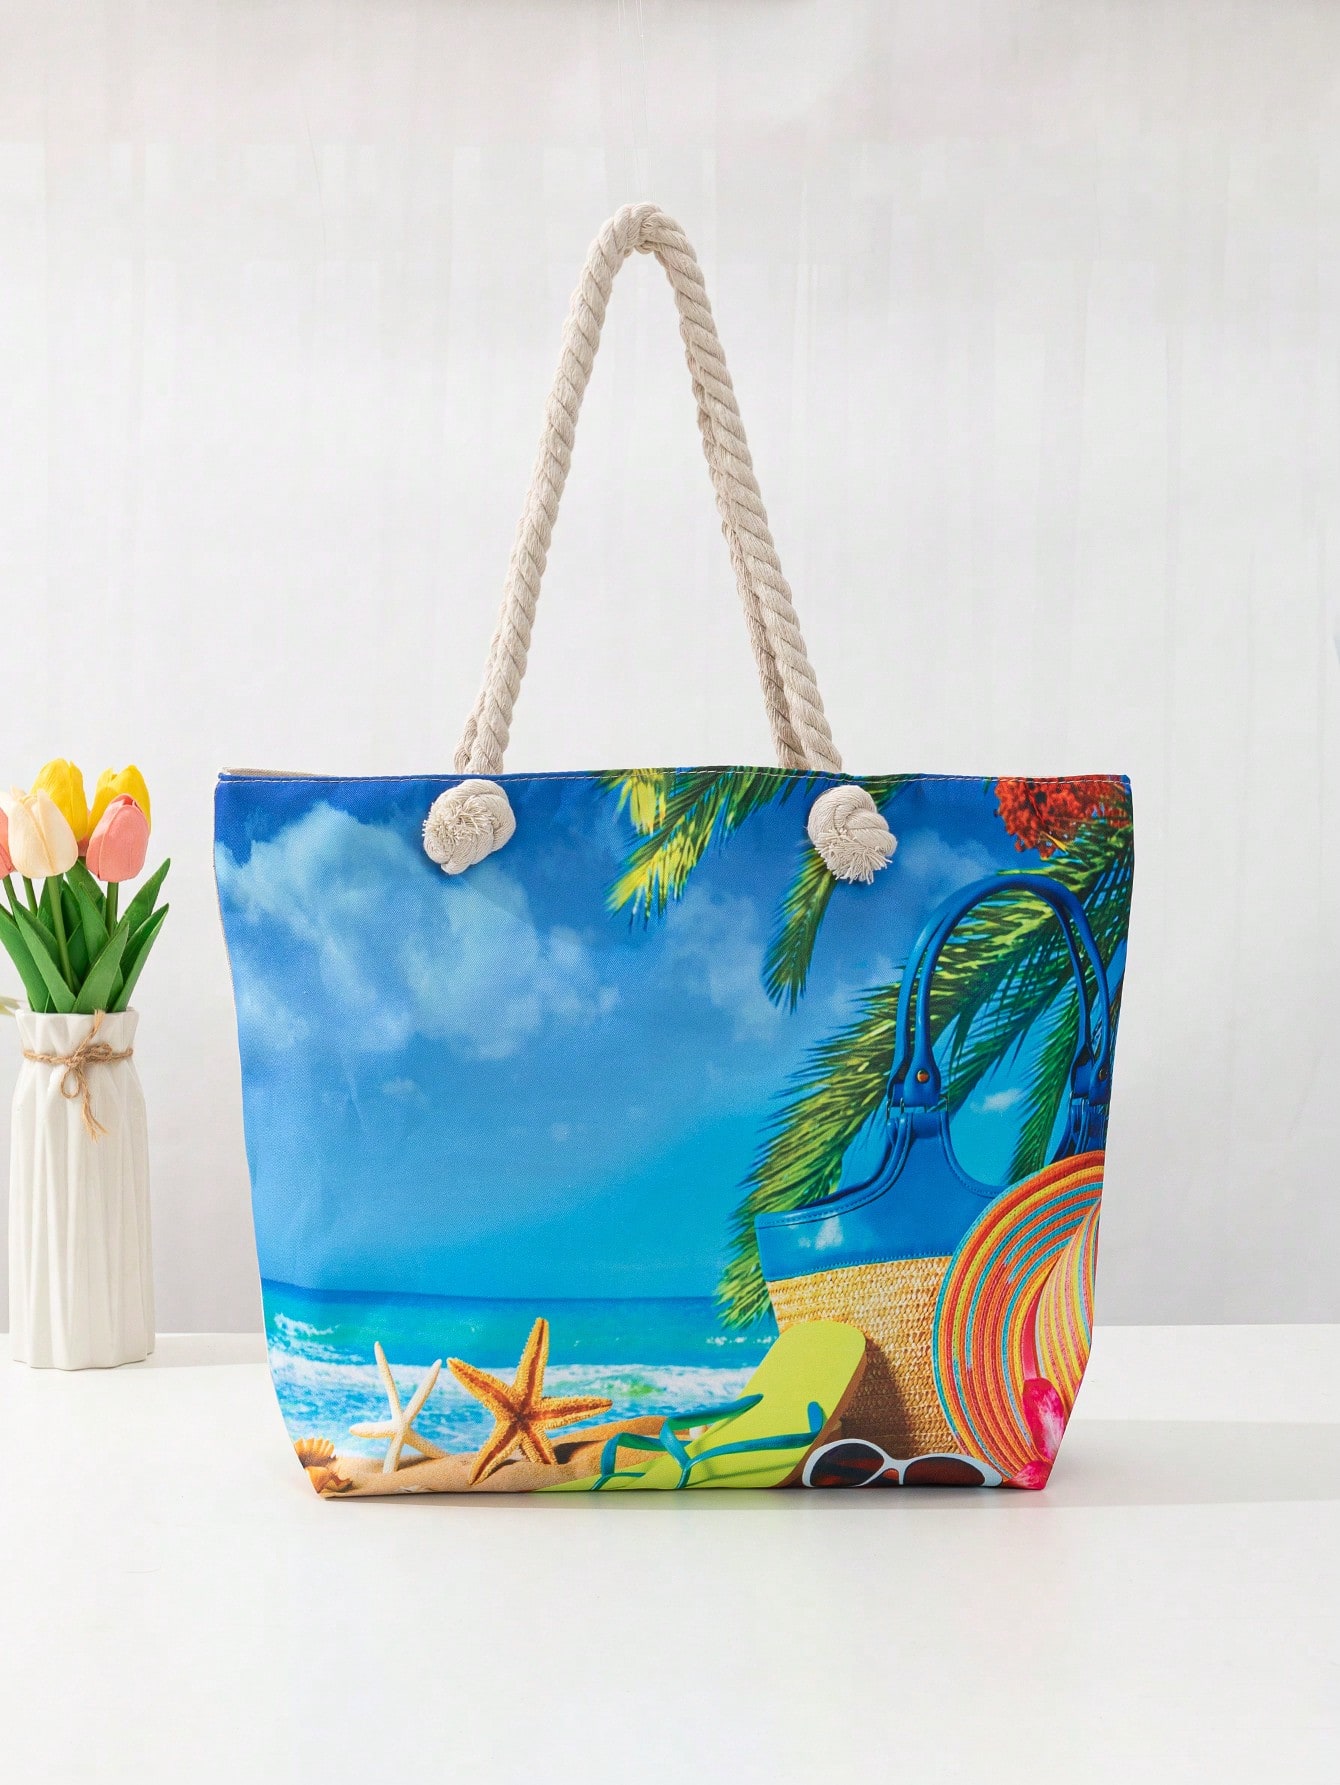 Повседневная пляжная сумка-тоут с радужной шляпой и принтом, многоцветный сумка пляжная mikimarket повседневная текстиль белый мультиколор